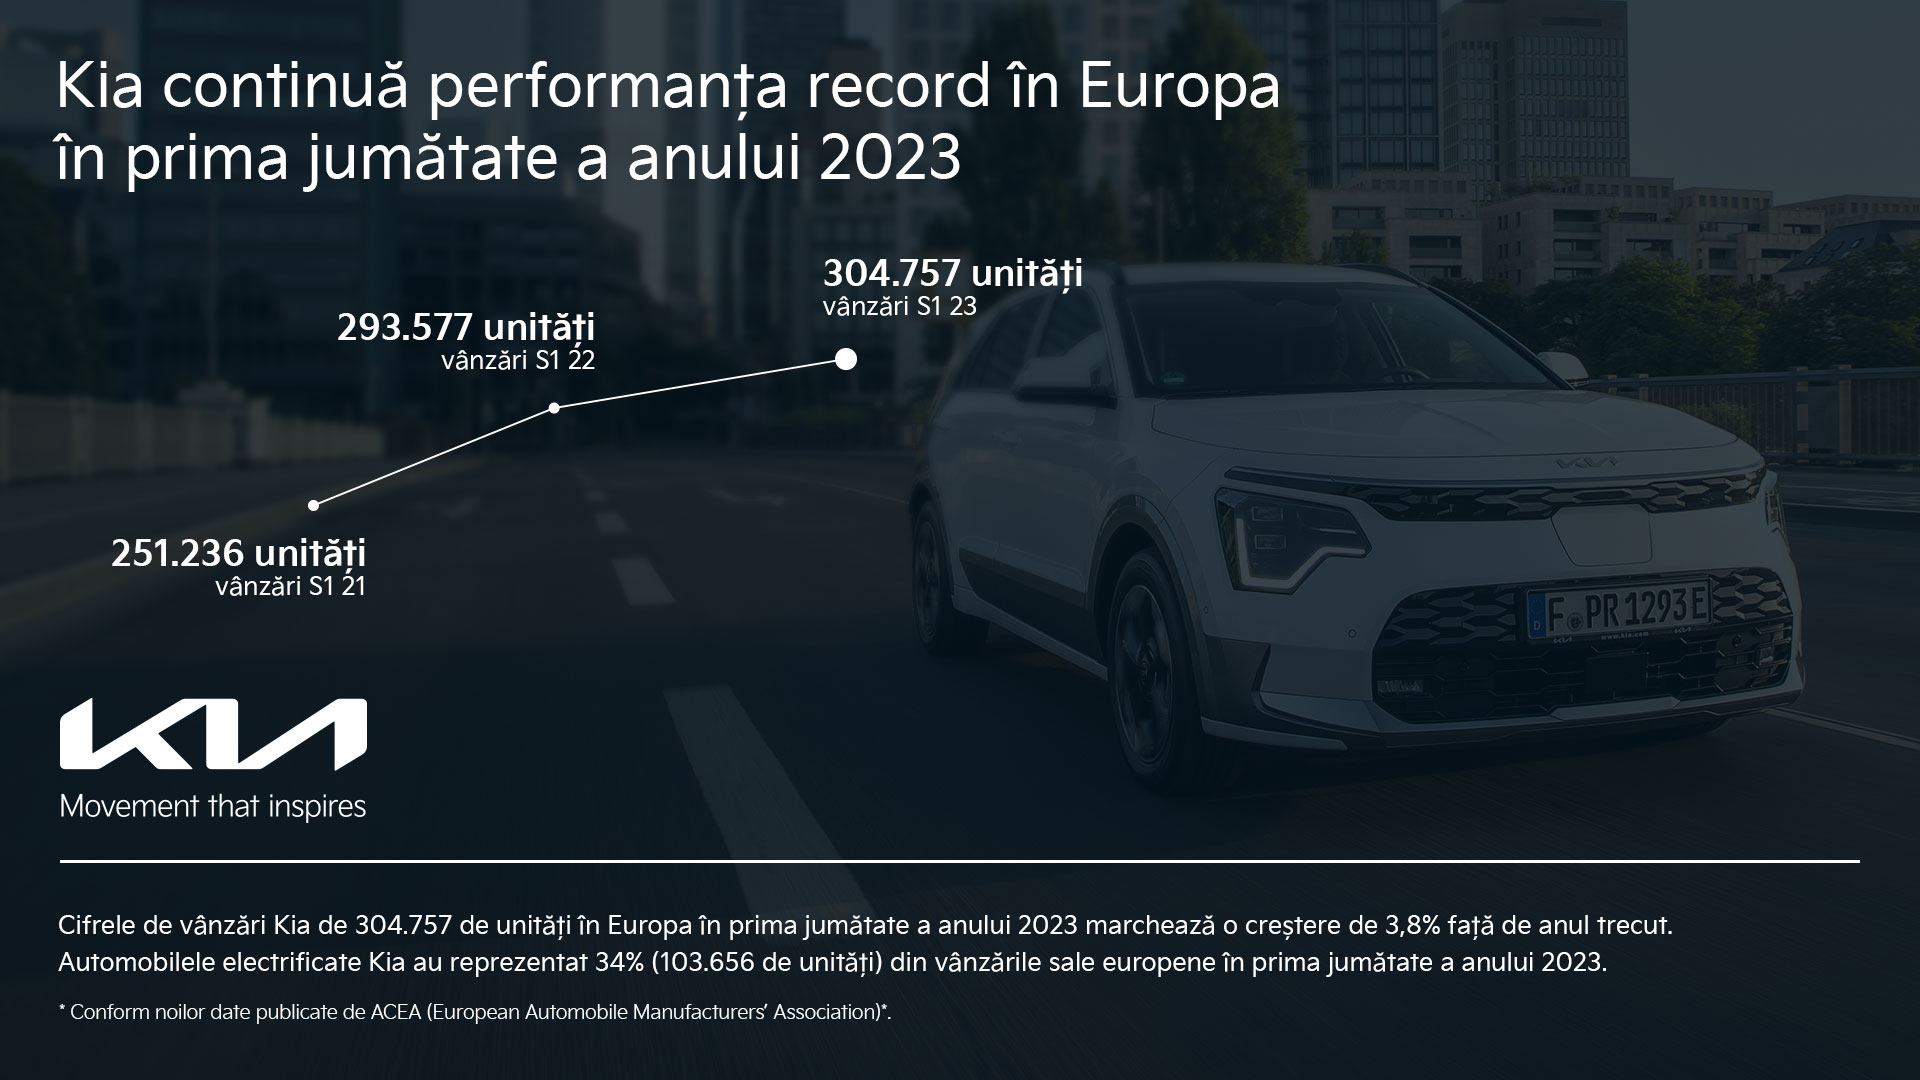 Kia установила рекорд по продажам в Европе